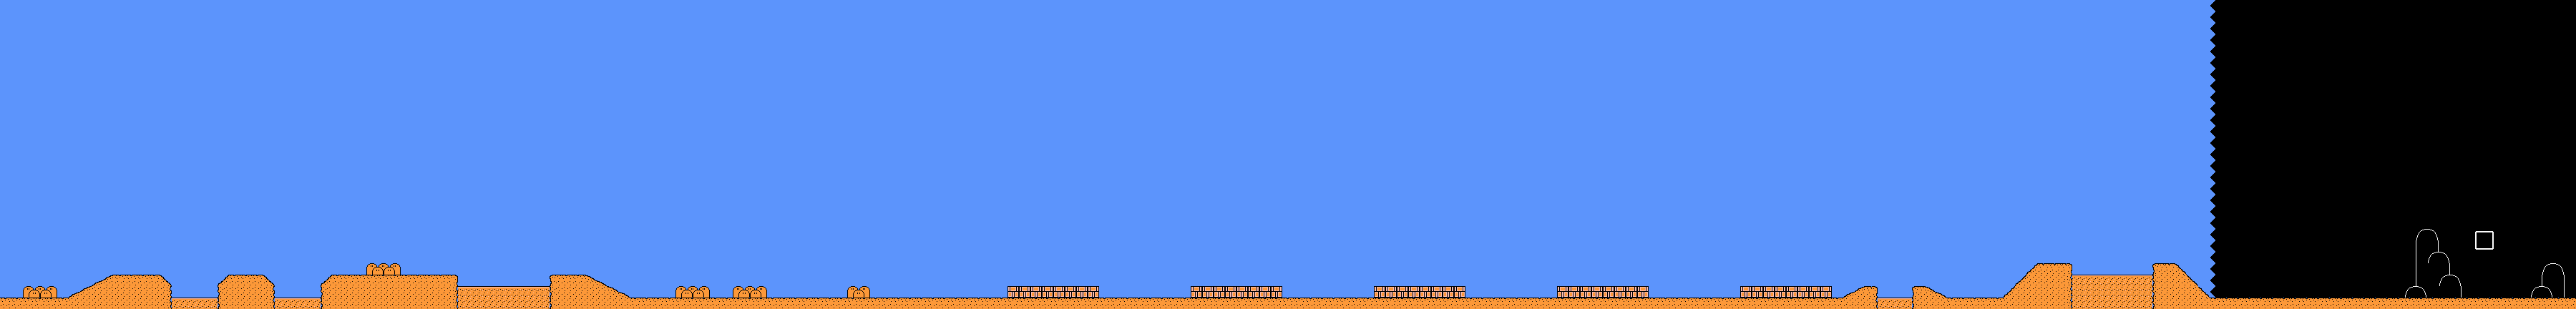 Super Mario Bros. 3 - World 2-Quicksand